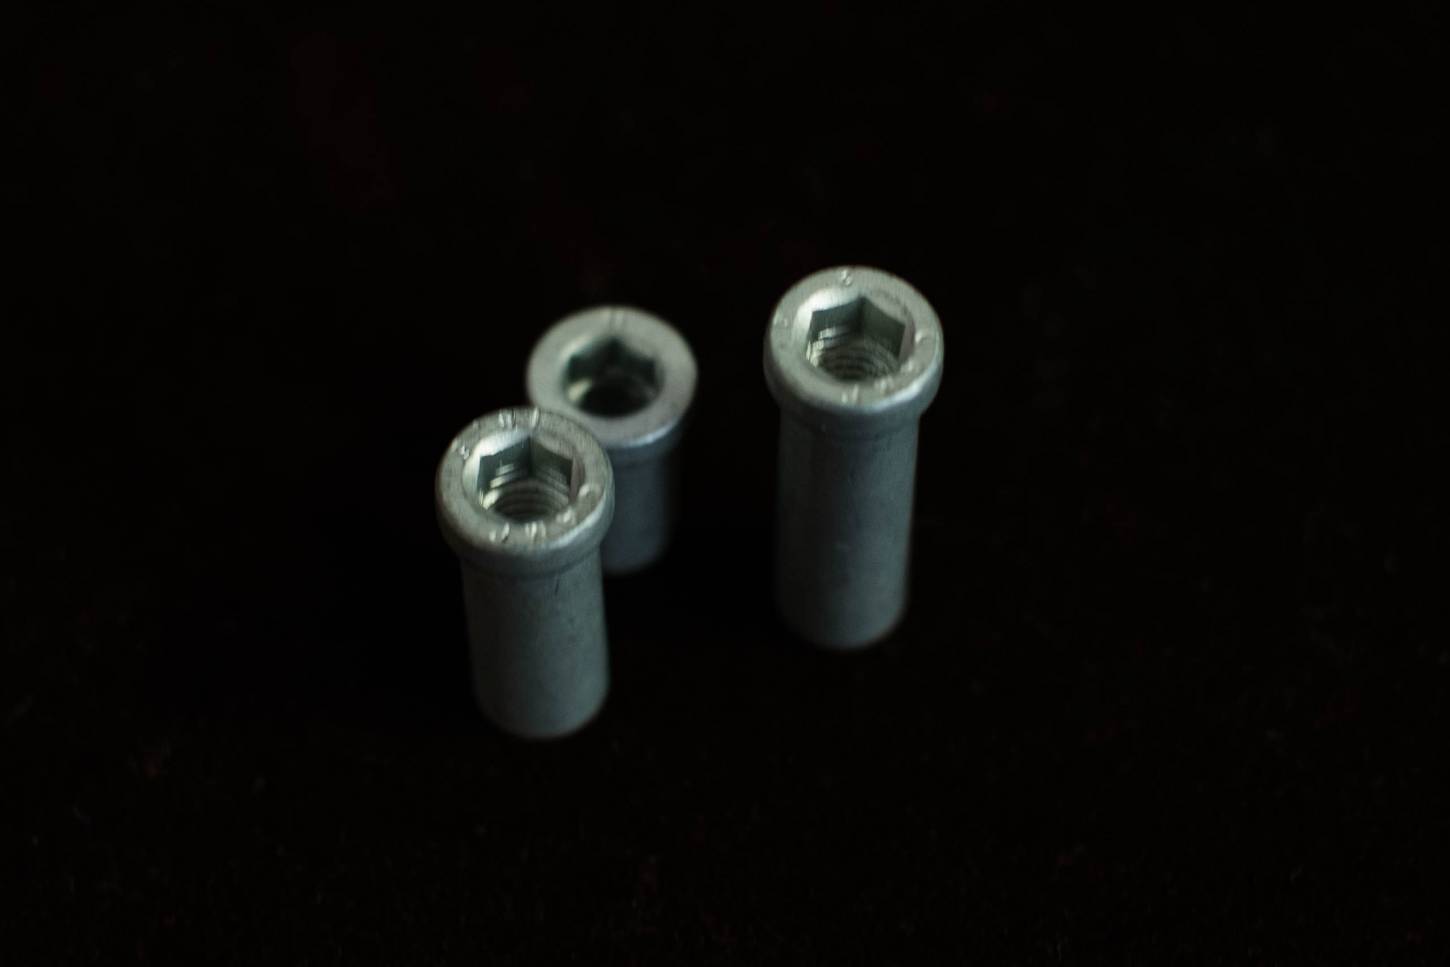 NOS Campagnolo Hülsenmutter 15 mm + 21,5 mm + 27 mm Brake Nuts Vintage Rennrad